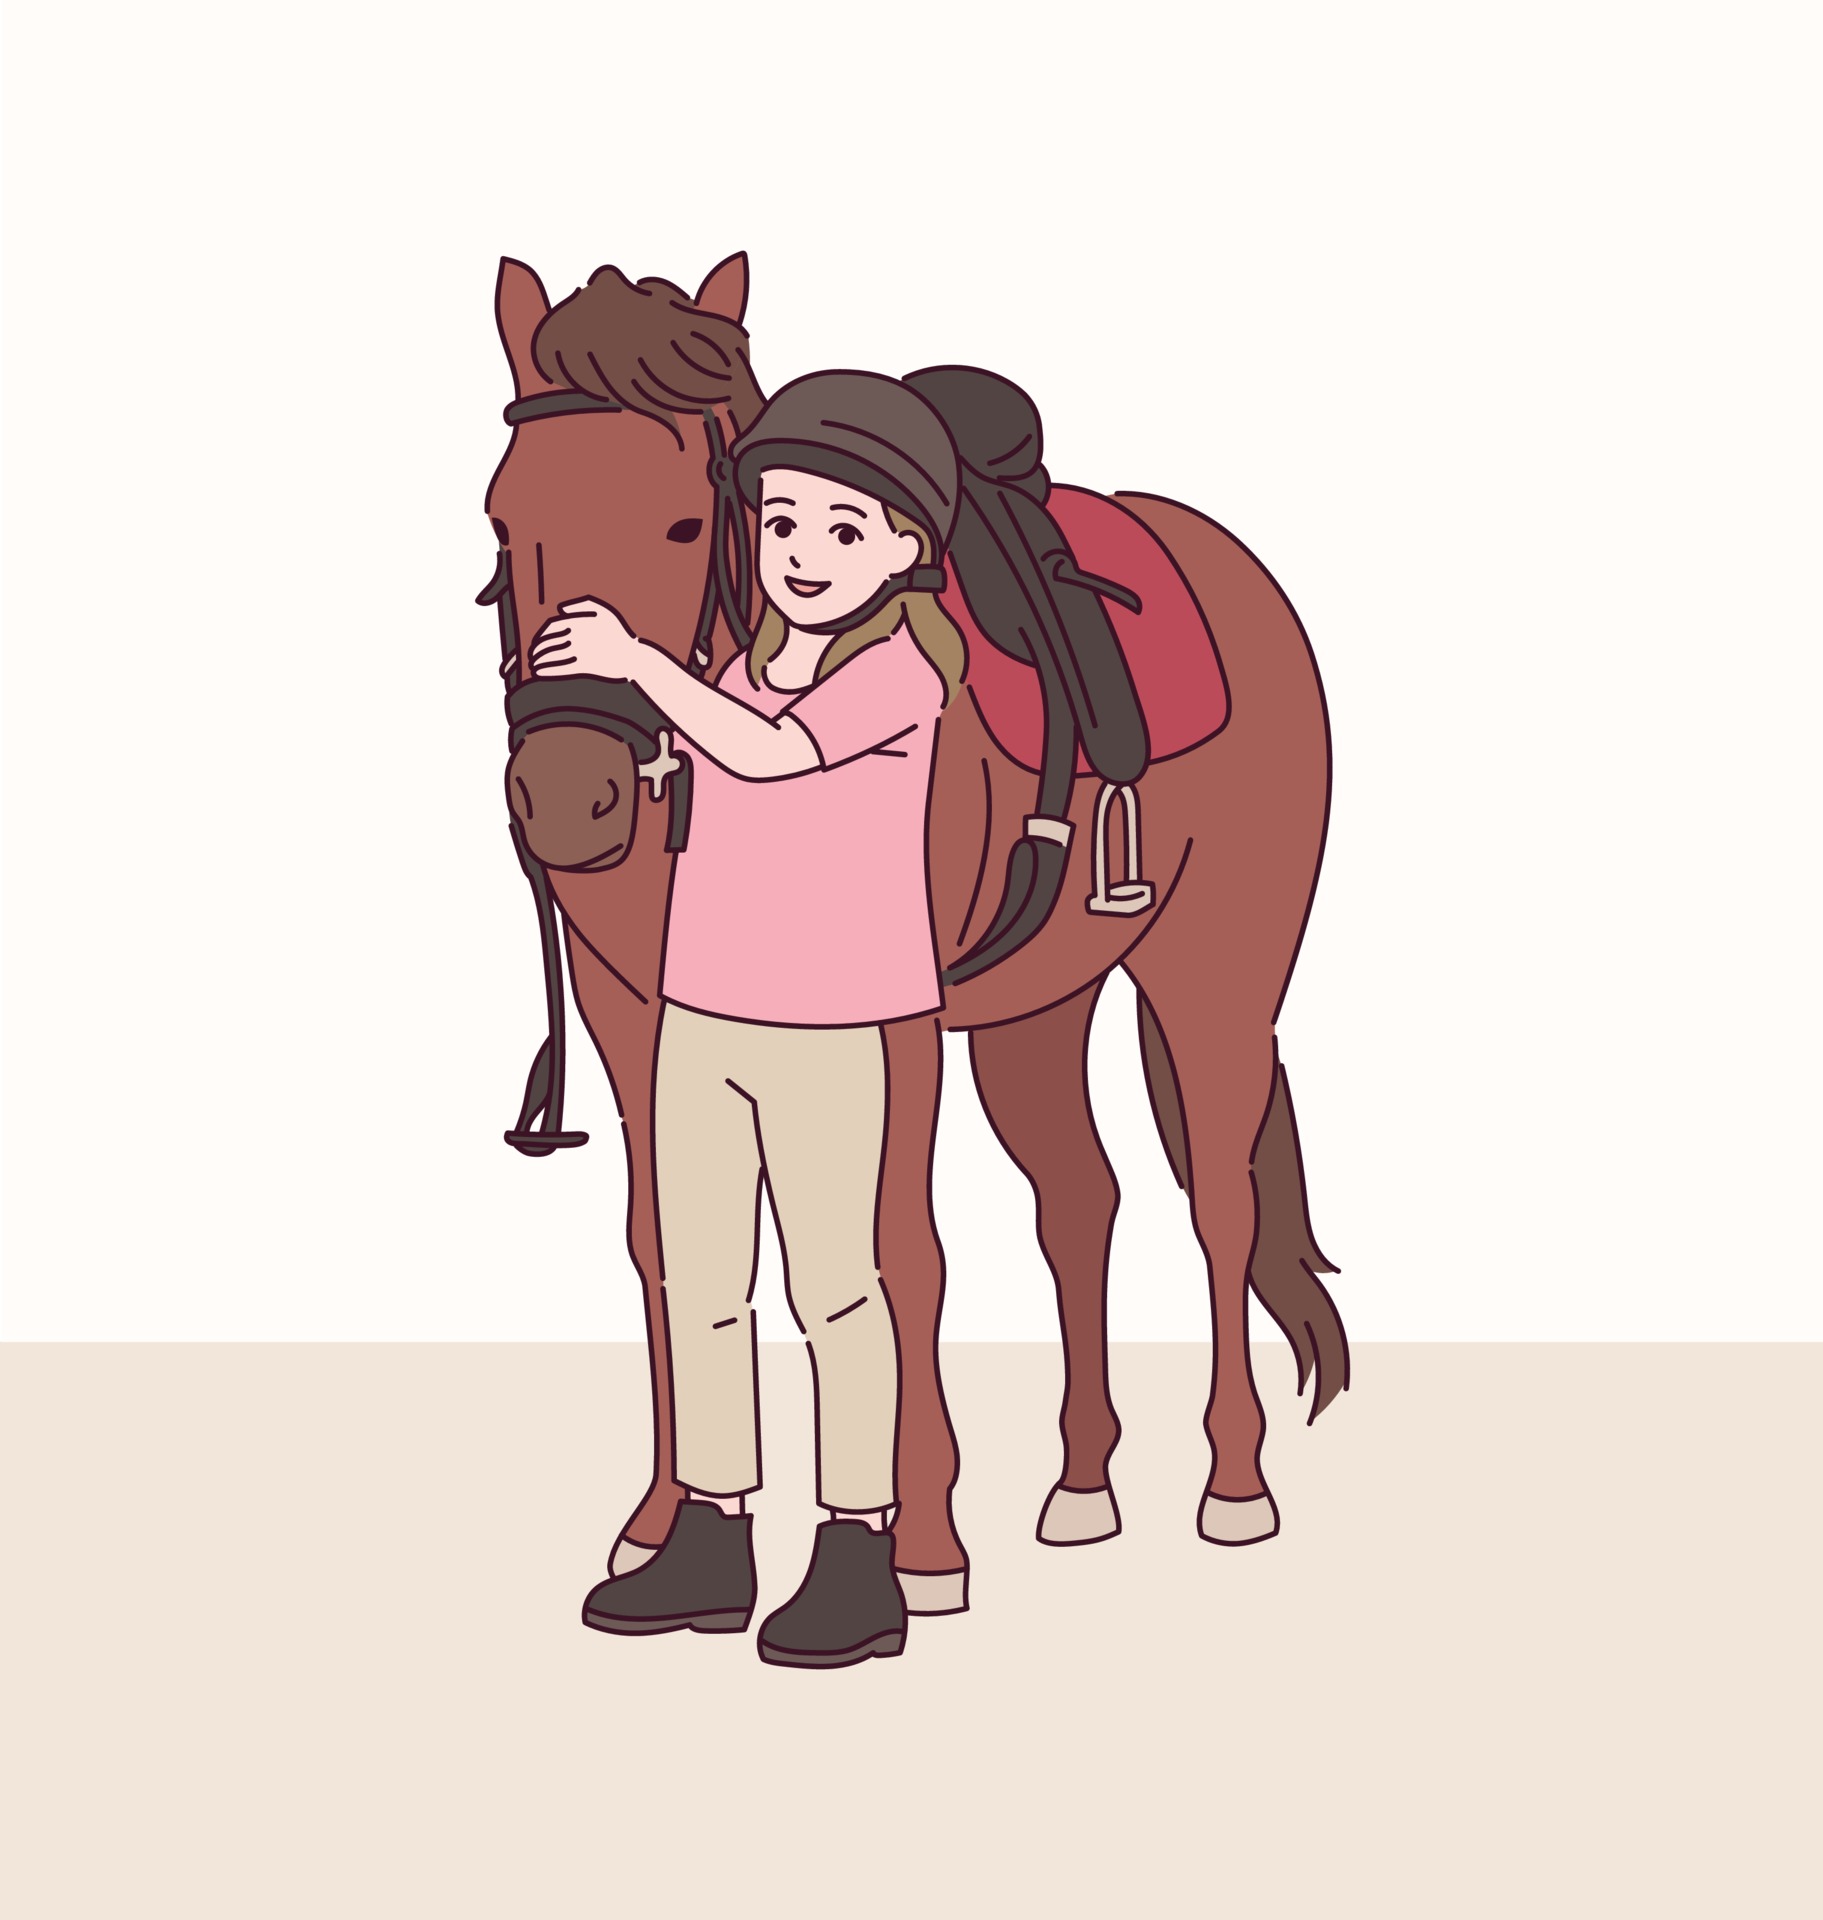 une fille à cheval sur une scène de ferme 7297733 Art vectoriel